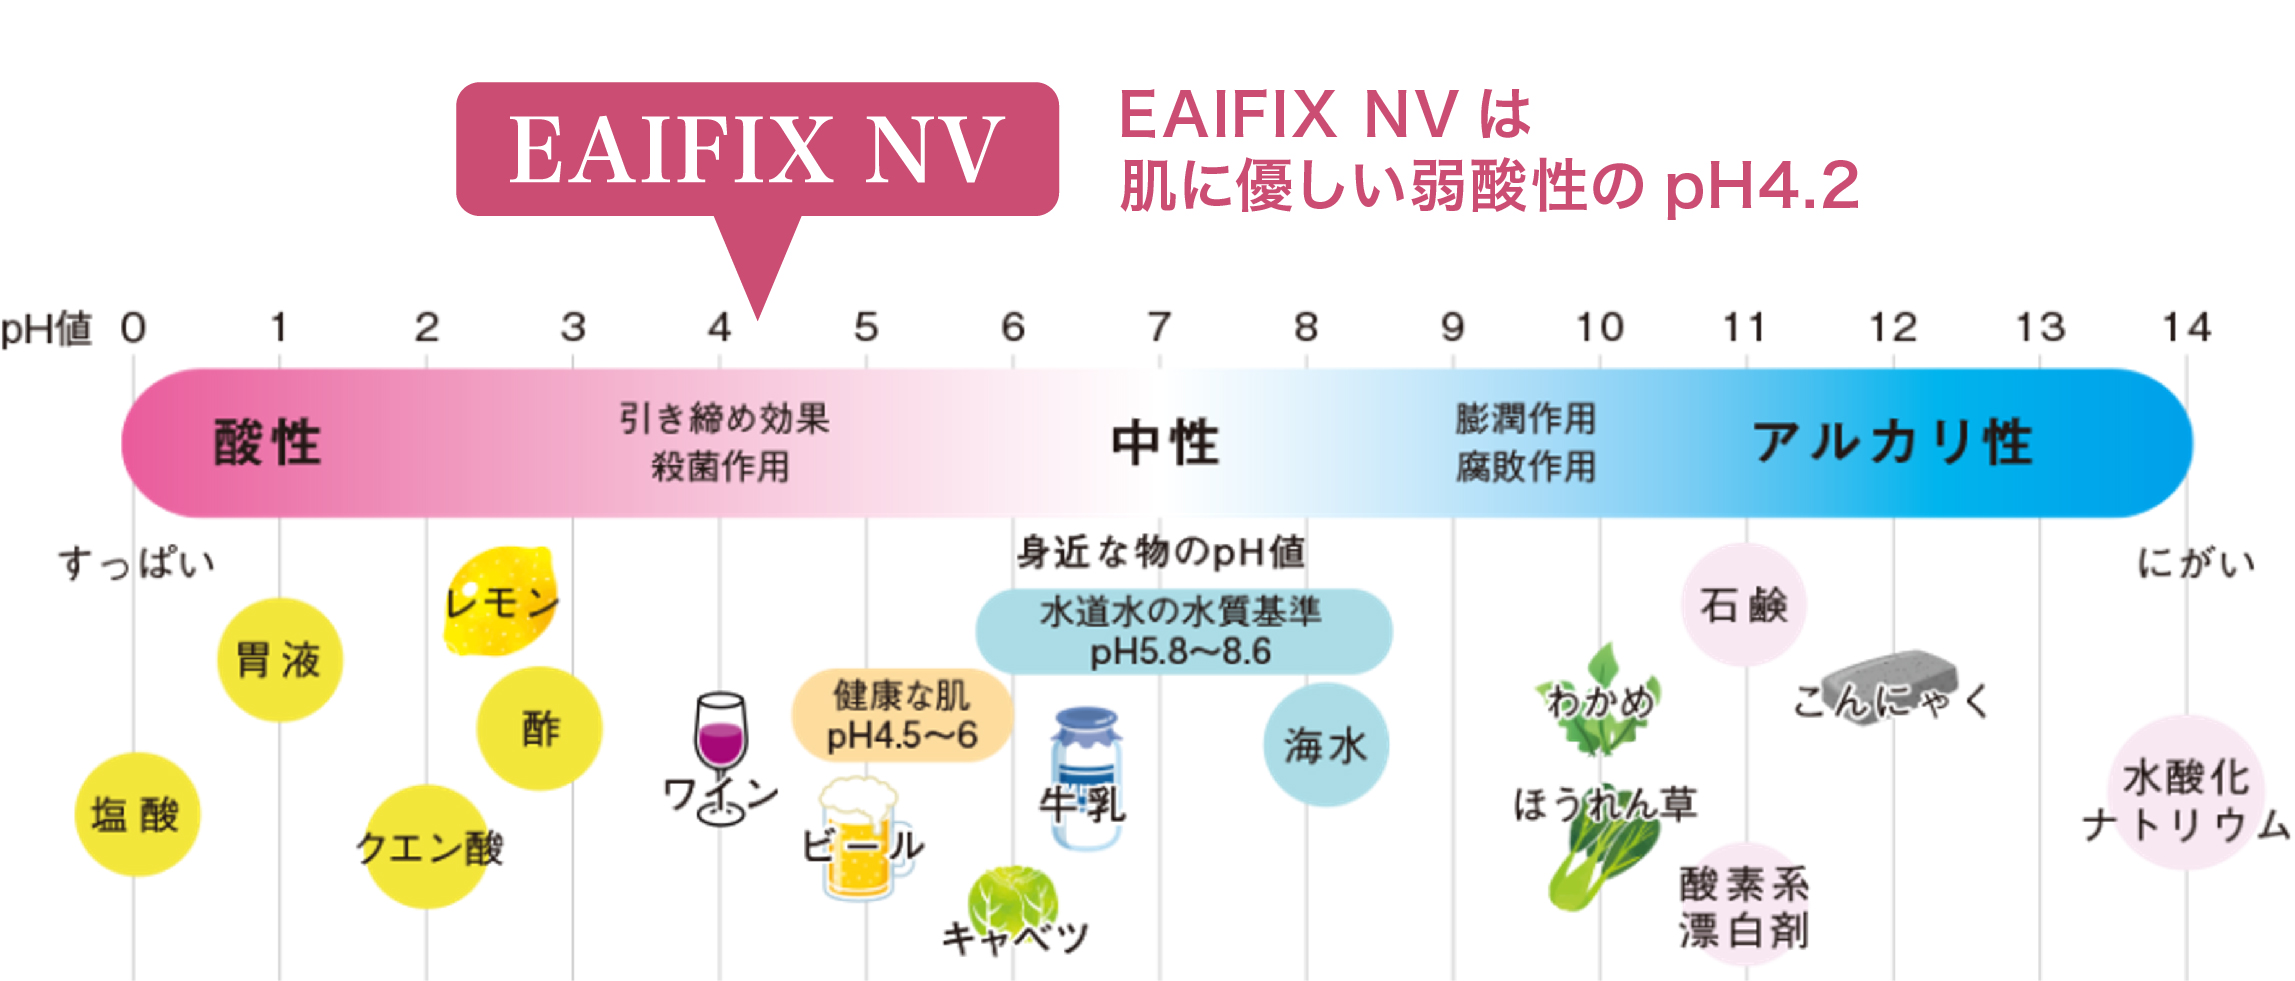 アルコール消毒液-EAIFIX NVのpH値説明図